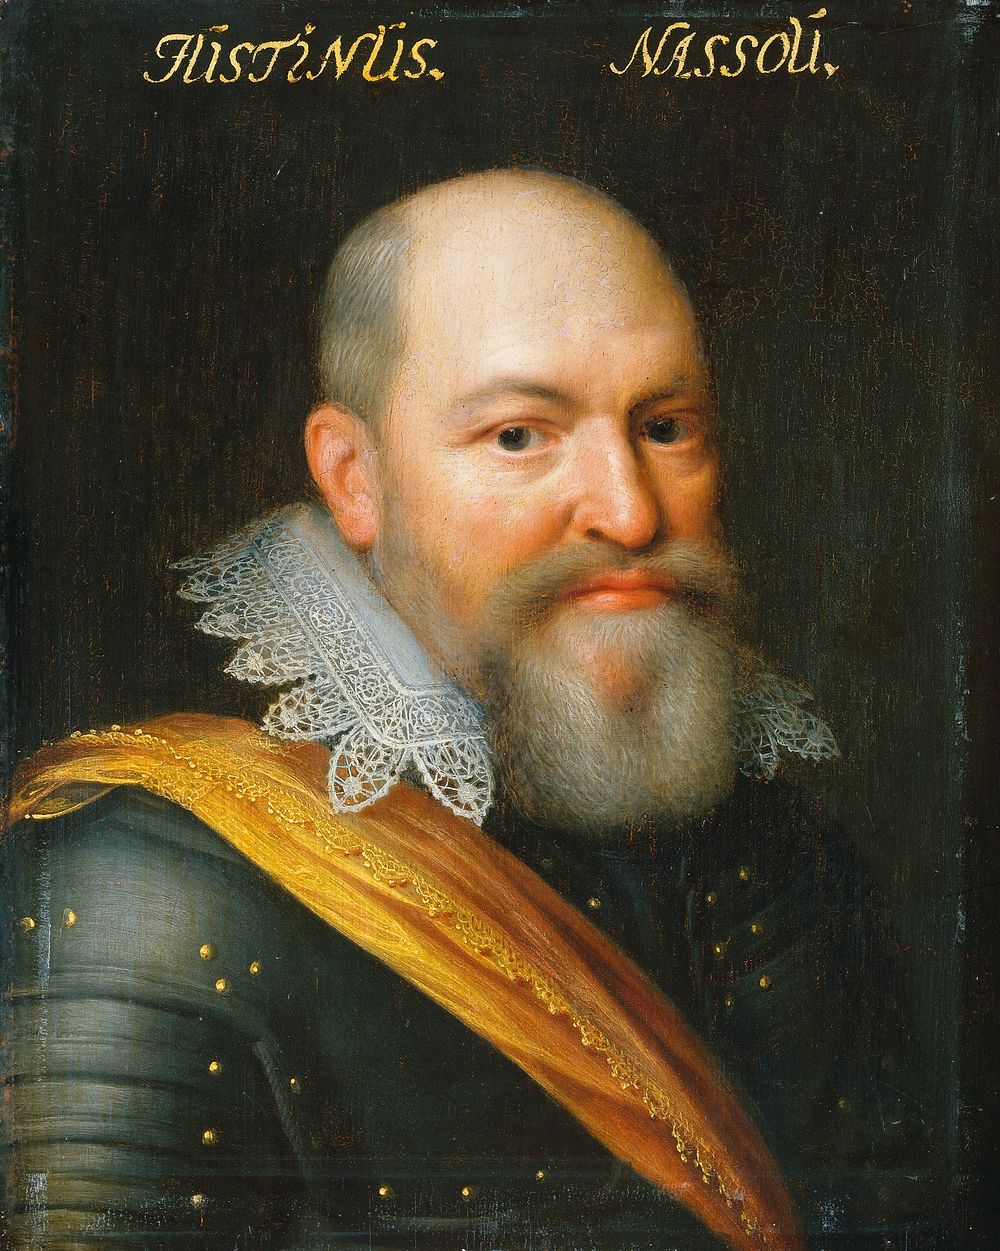 Portrait of Justinus of Nassau (1559-1631) (c. 1609 - c. 1633) by Jan Antonisz van Ravesteyn